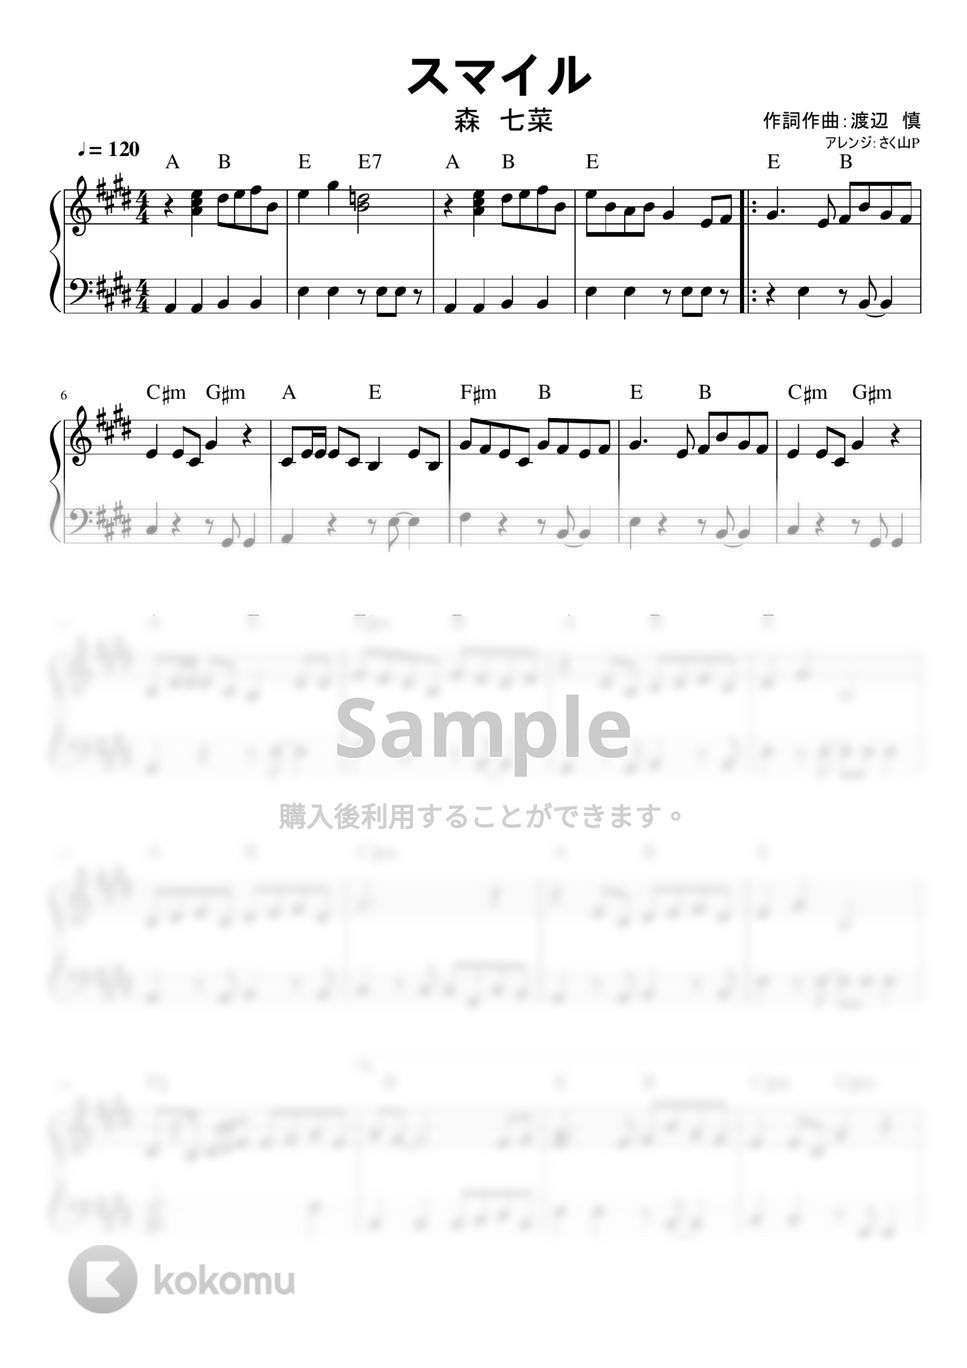 ホフディラン - スマイル (簡単ピアノ / 初中級 / 森七菜ver) by さく山P